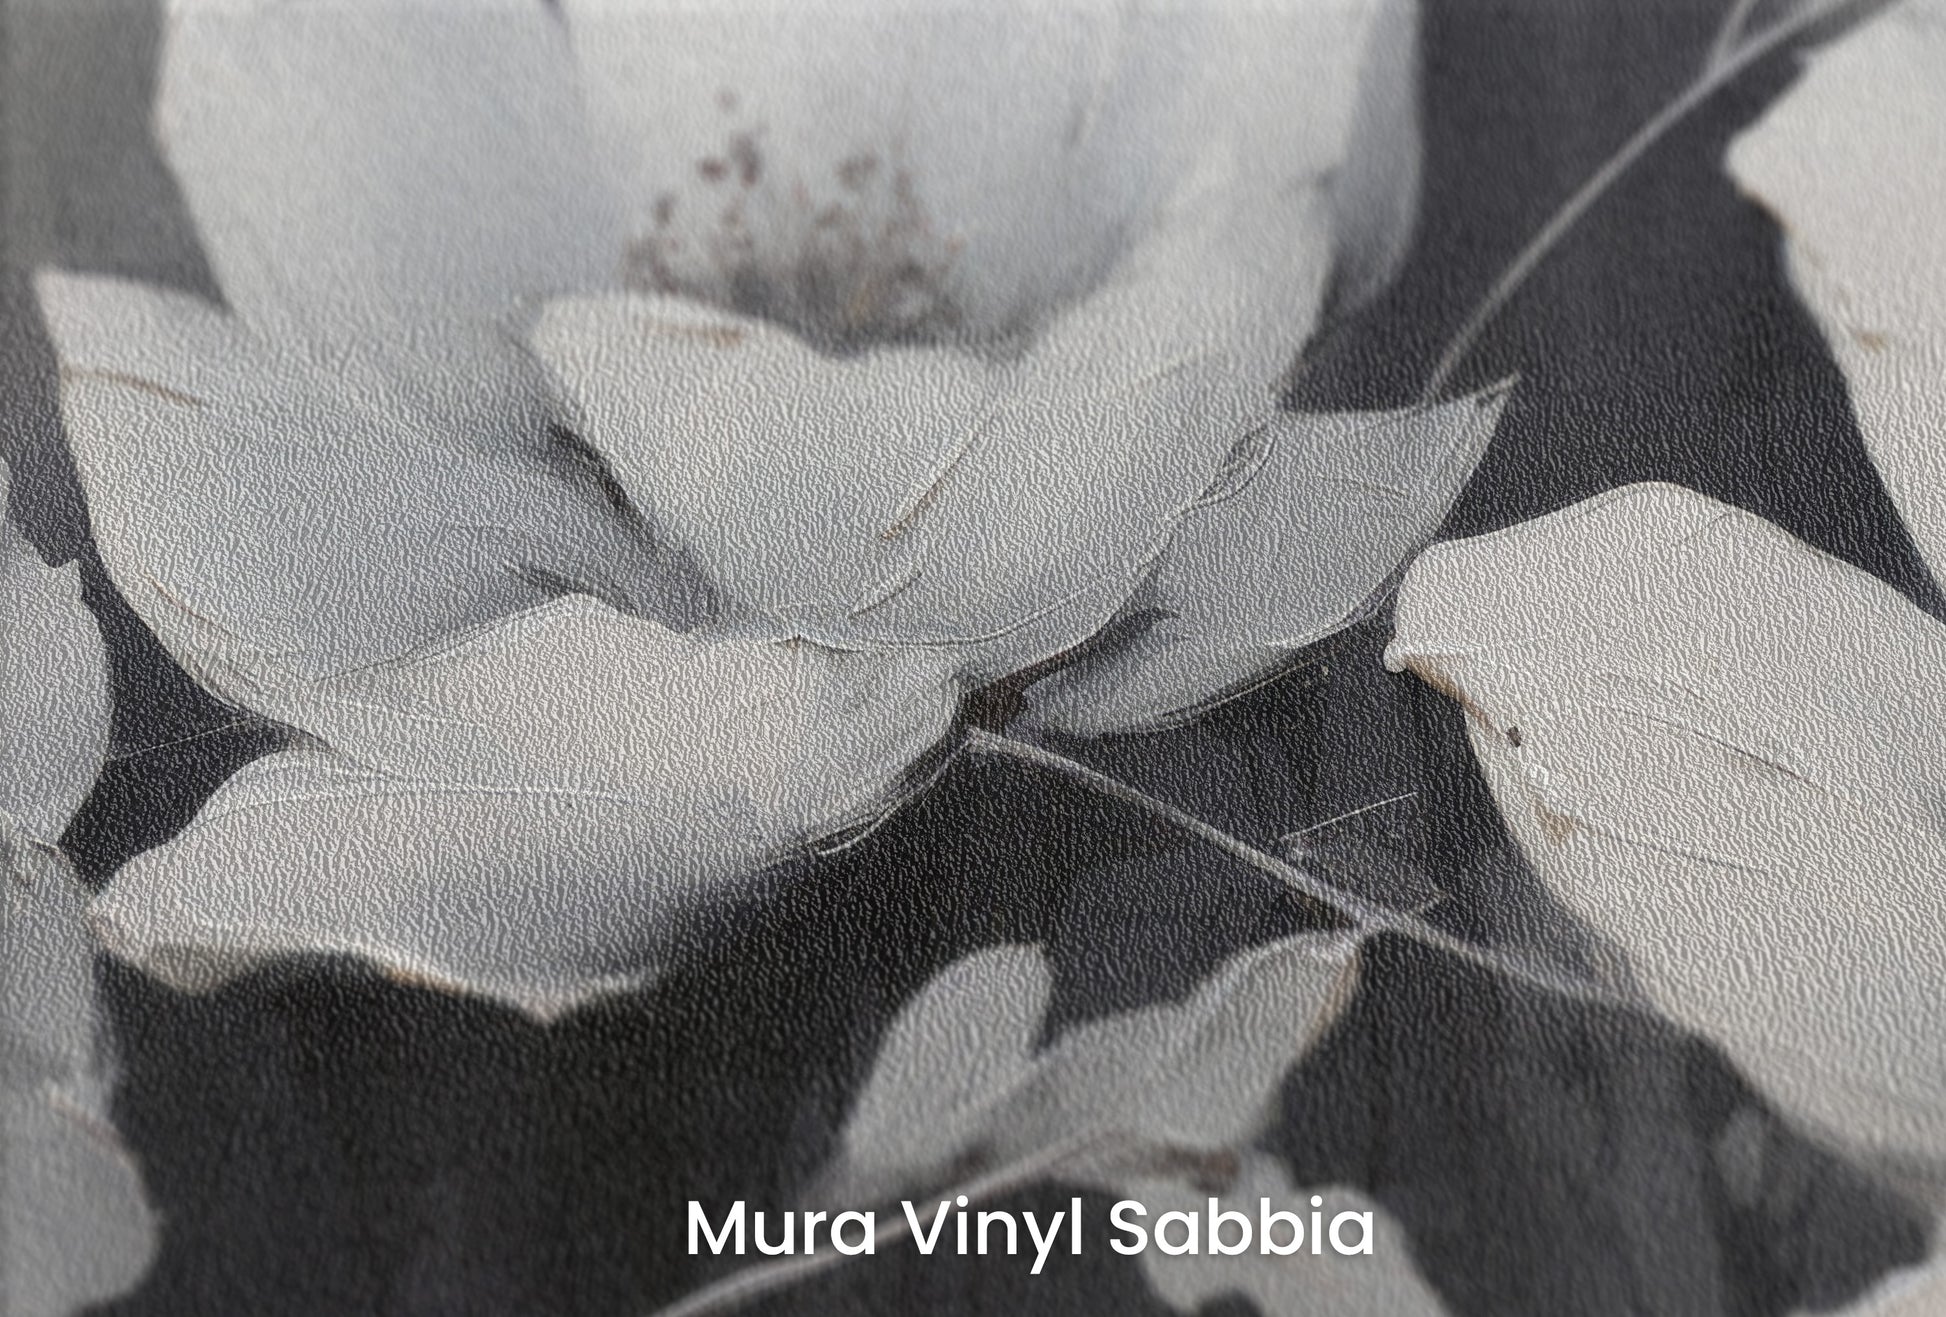 Zbliżenie na artystyczną fototapetę o nazwie MOONLIGHT SERENADE BLOSSOMS na podłożu Mura Vinyl Sabbia struktura grubego ziarna piasku.